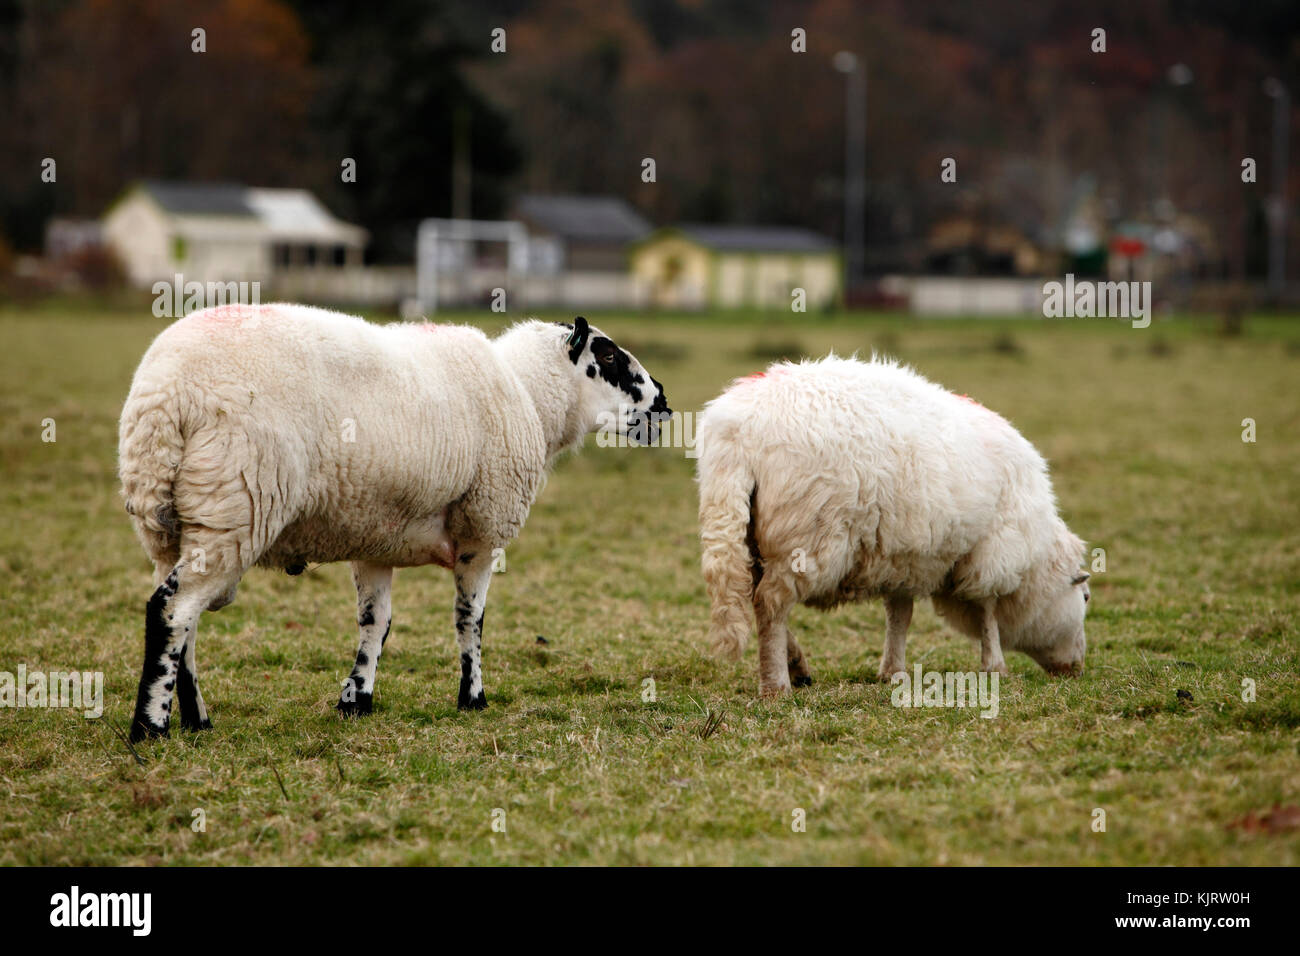 Kerry Hill Ram und Welsh Mountain Ewe, walisischen Schafe Vielfalt. Weiße Schafe mit schwarzen Markierungen. Stockfoto